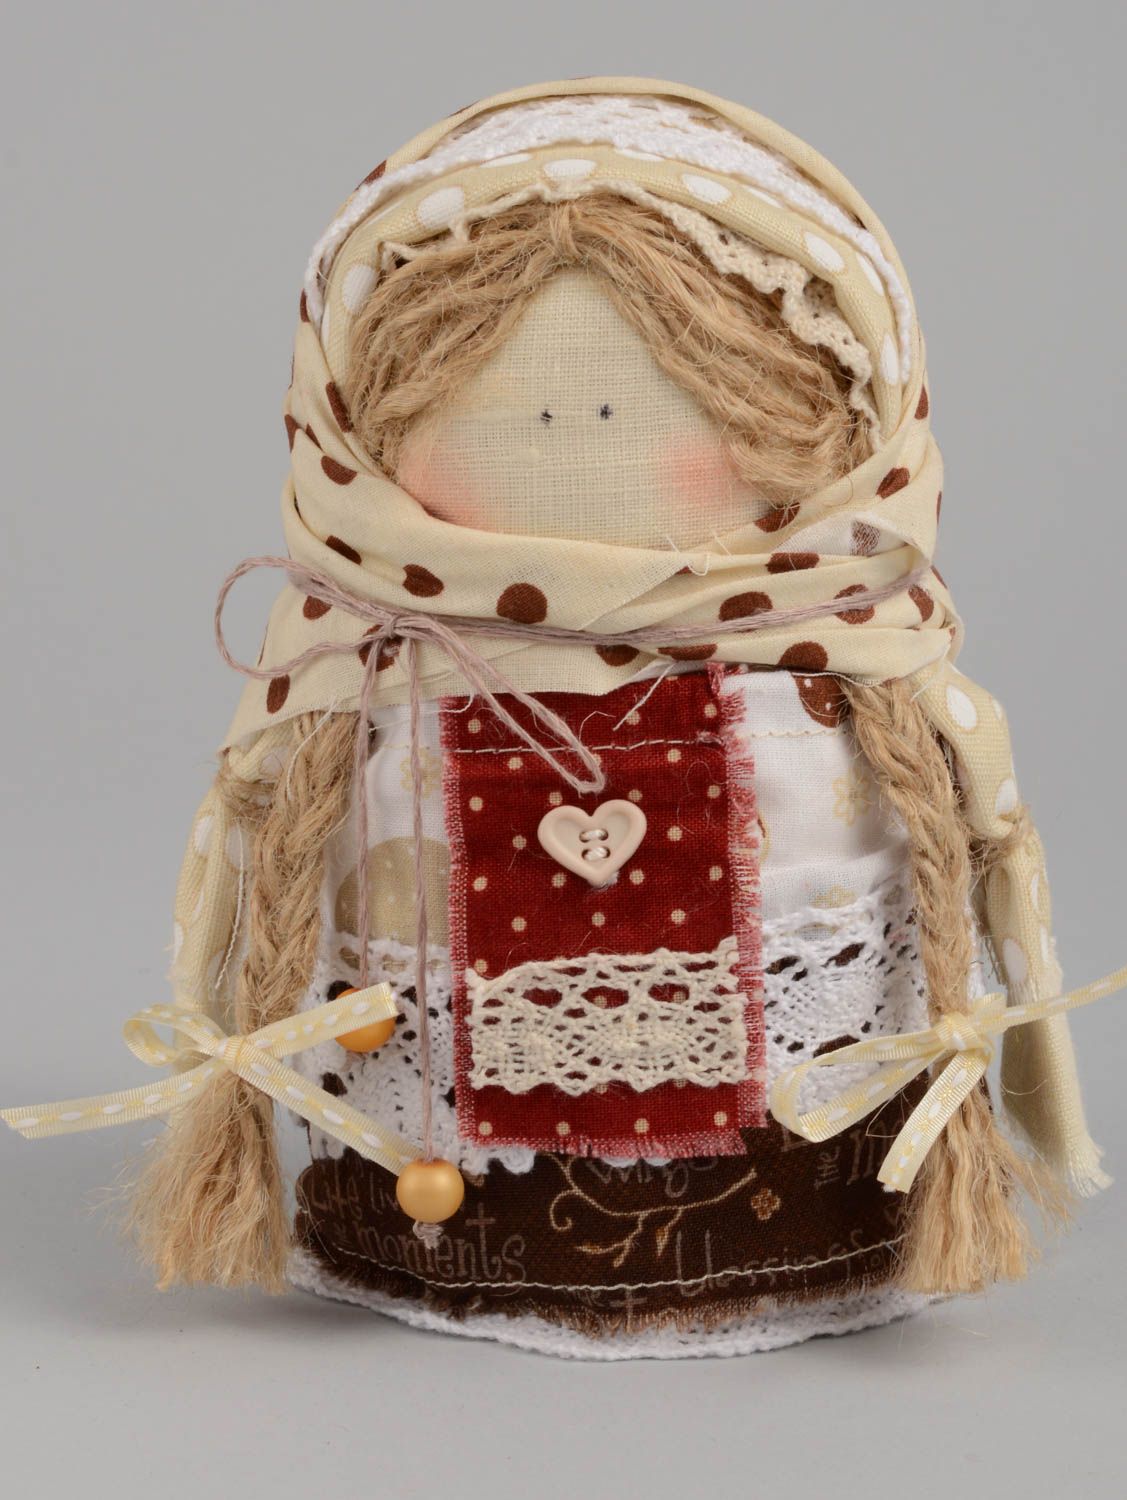 Кукла оберег крупеничка ручной работы из натуральной ткани красивая с крупой фото 2